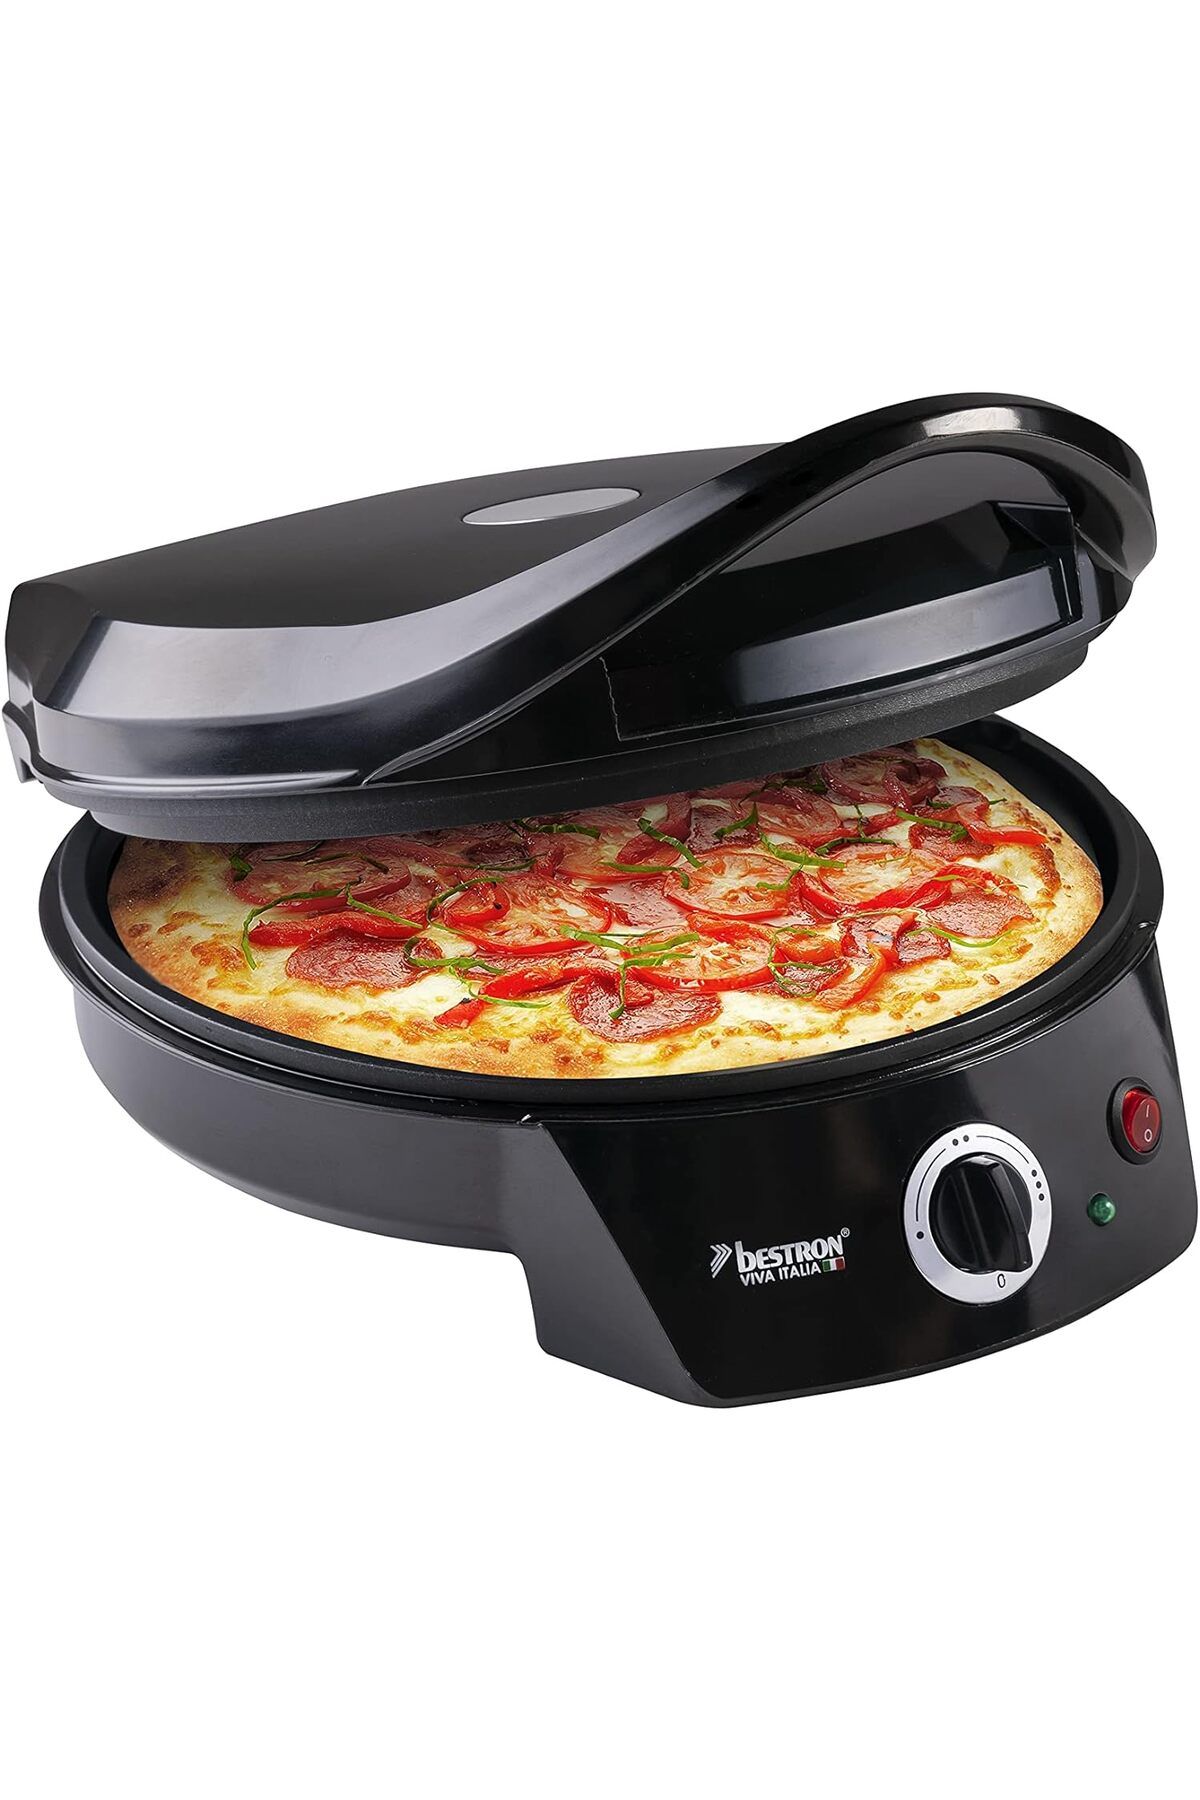 bestron Elektrikli Pizza Fırını, 230°C'ye kadar  Ev Yapımı veya Dondurulmuş Pizza için Yüksek/Düşük Isıtma